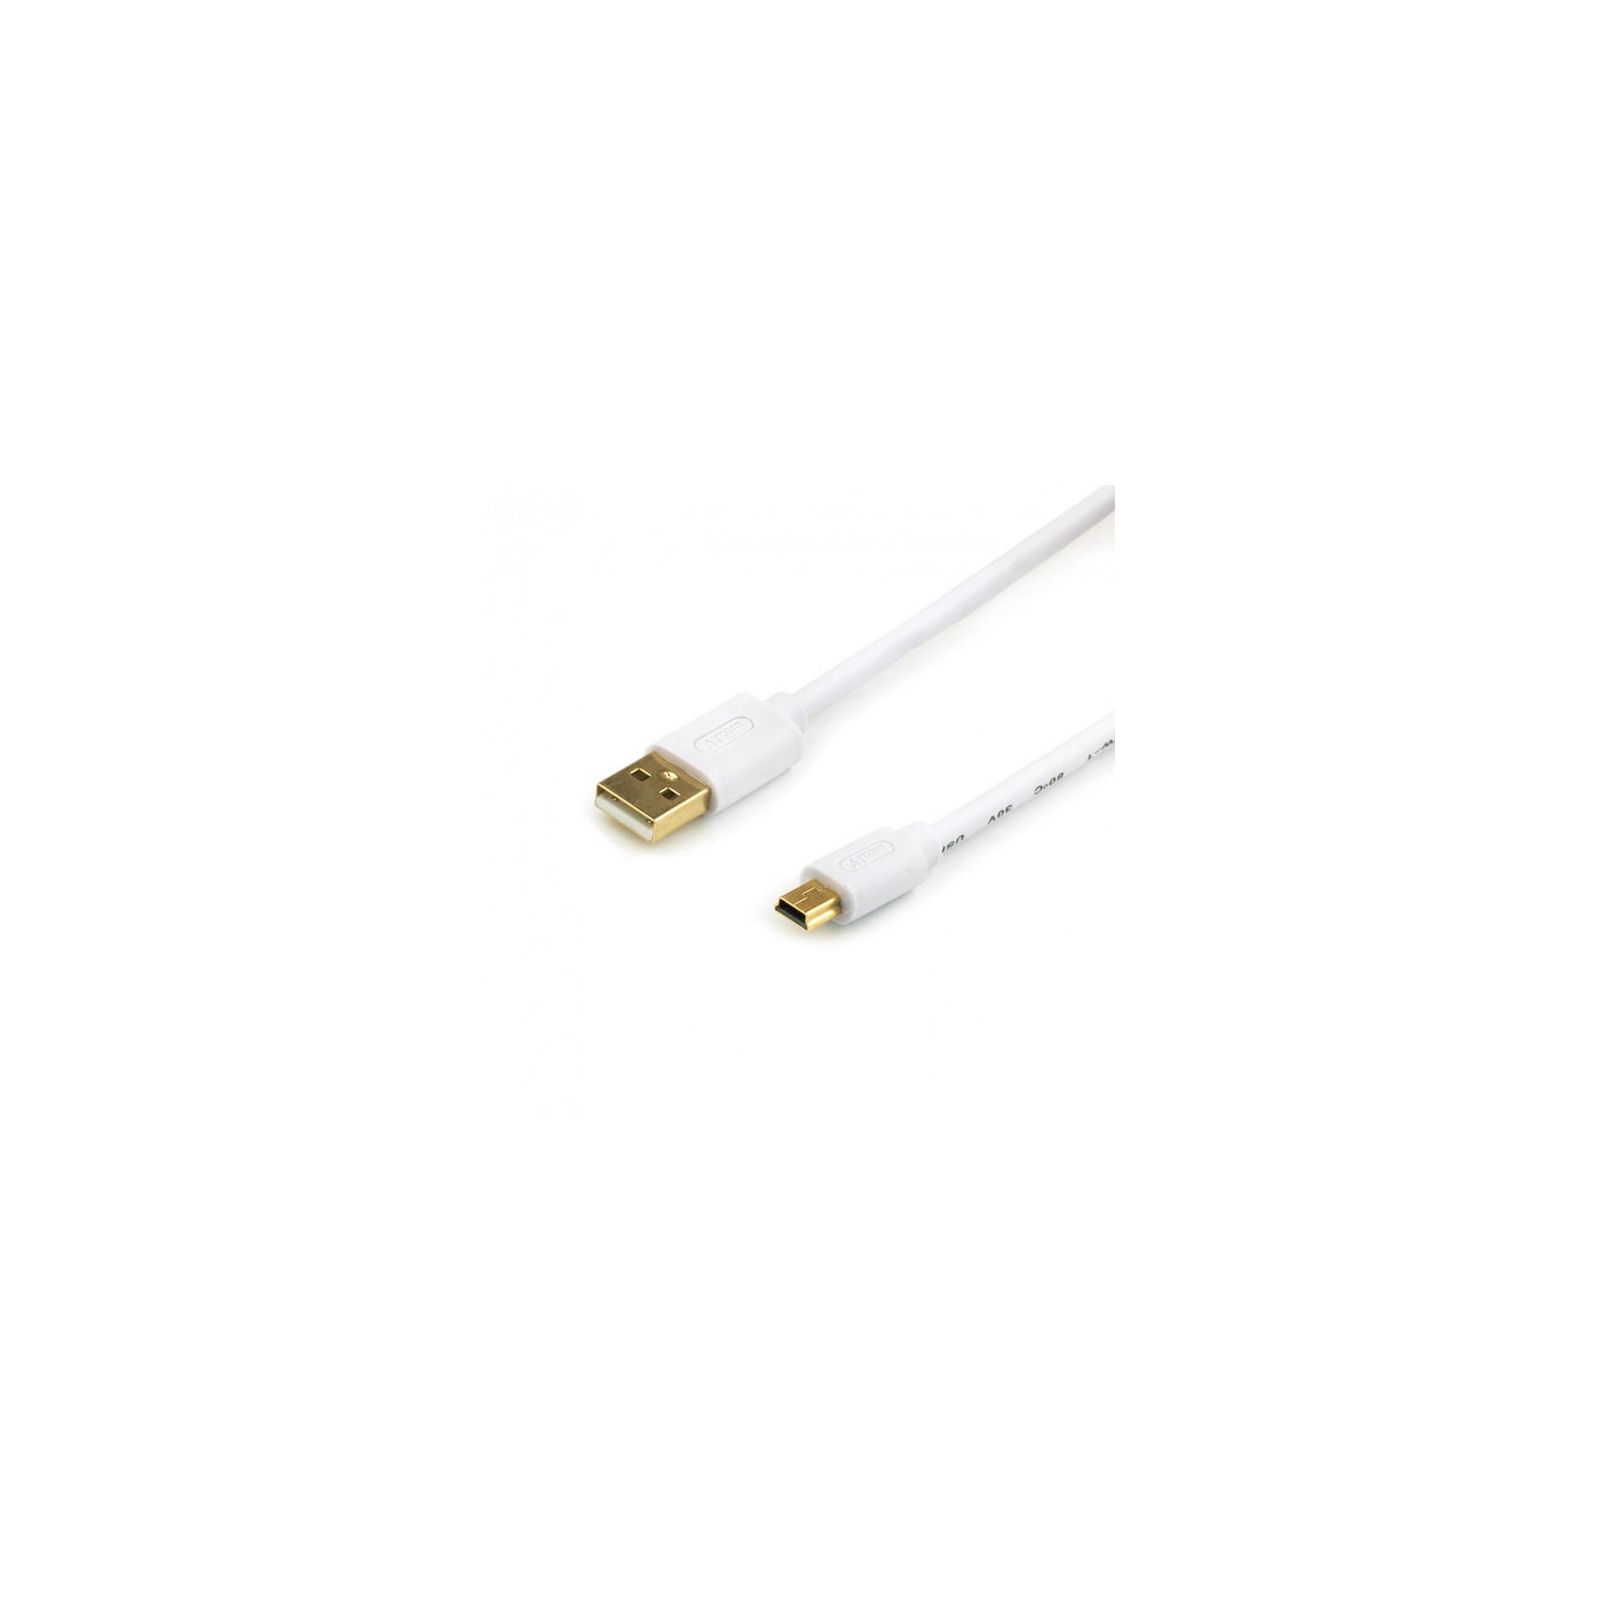 Дата кабель USB 2.0 AM to Mini 5P 1.8m Atcom (16120)